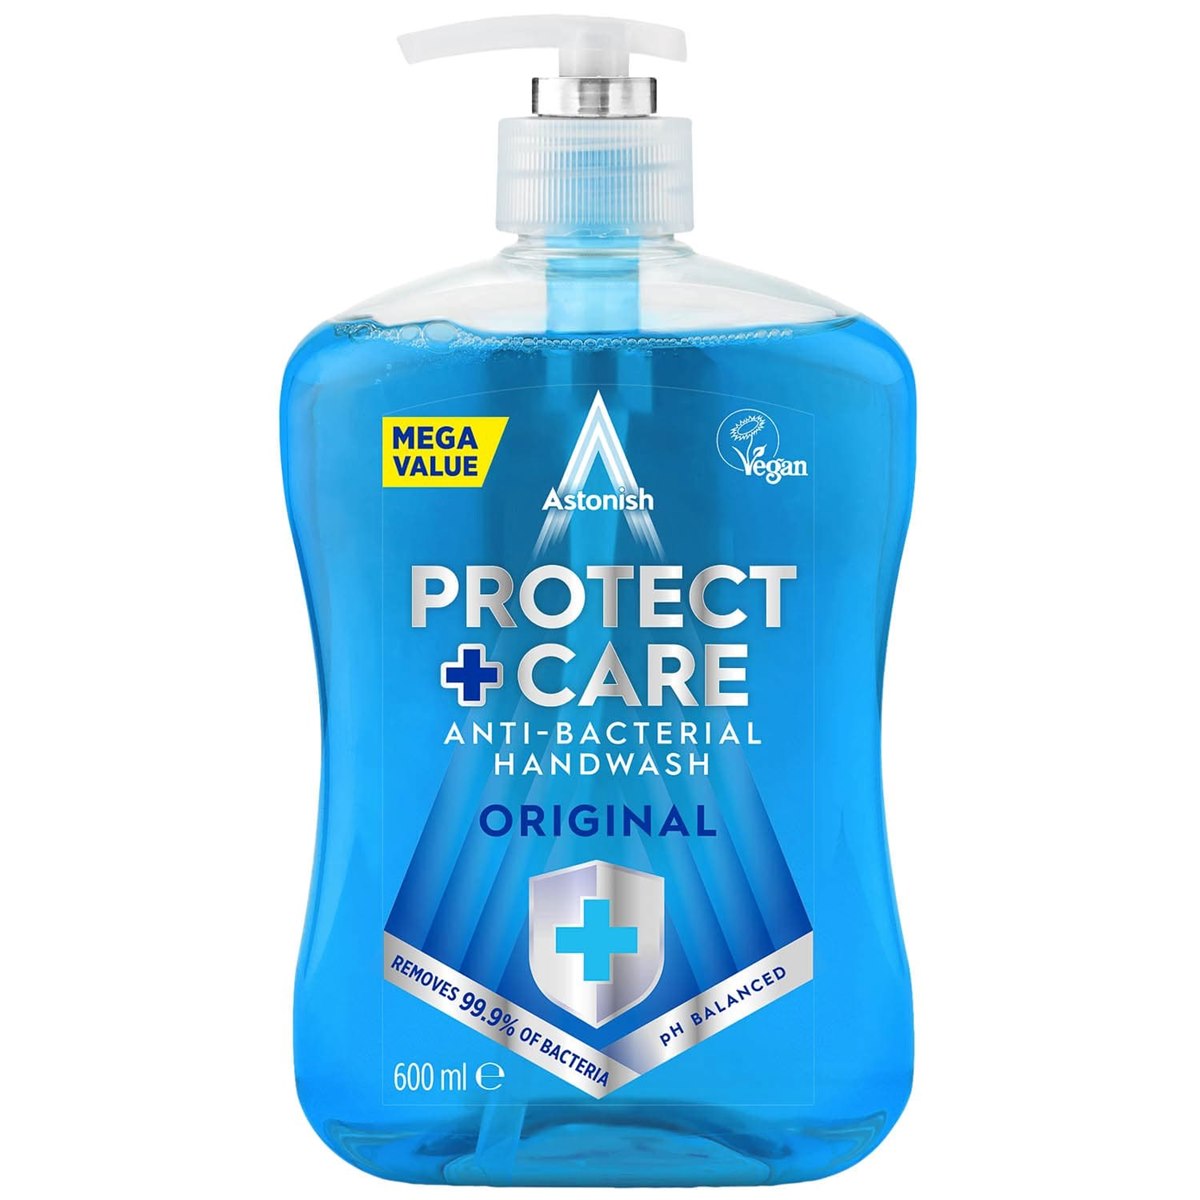 Astonish Protect + Care Anti Bacterial Handwash Original 600ml